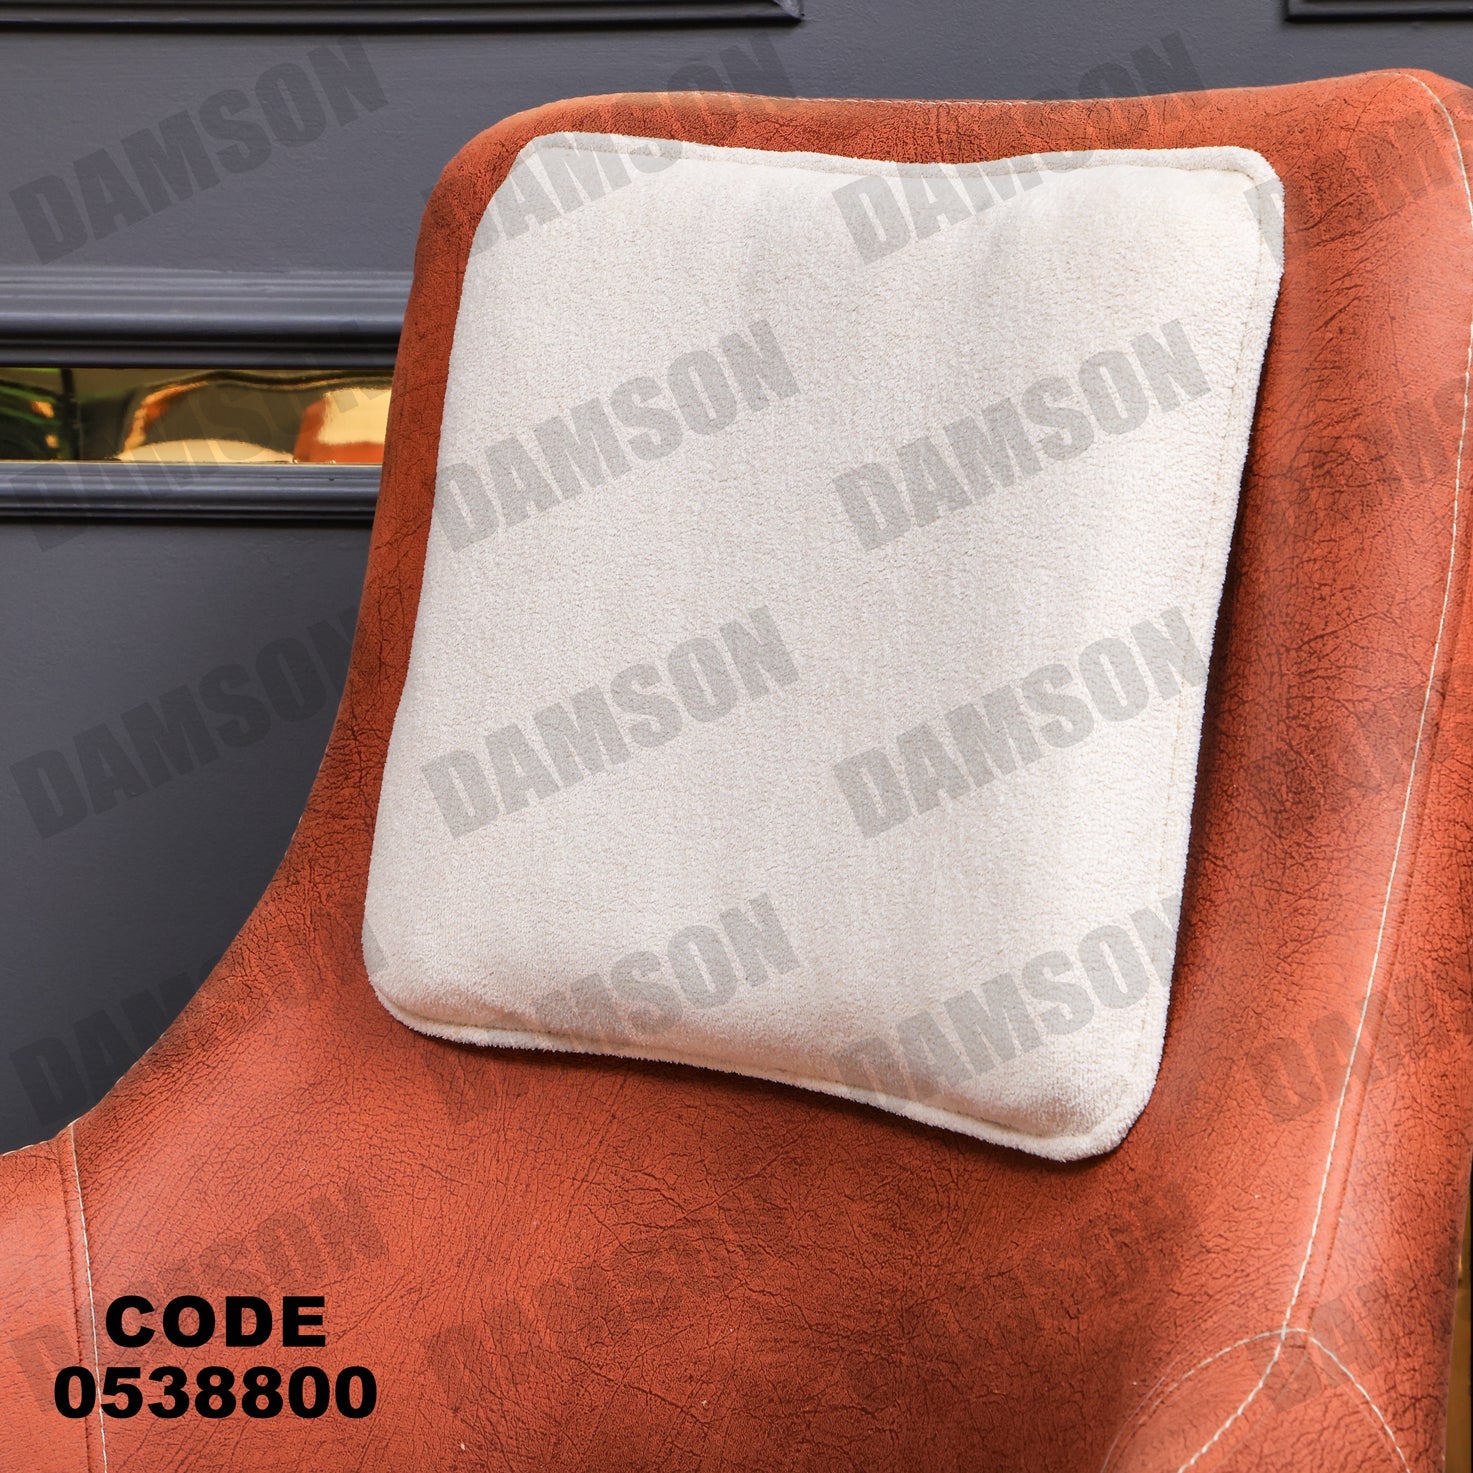 فوتية 1-388 - Damson Furnitureفوتية 1-388